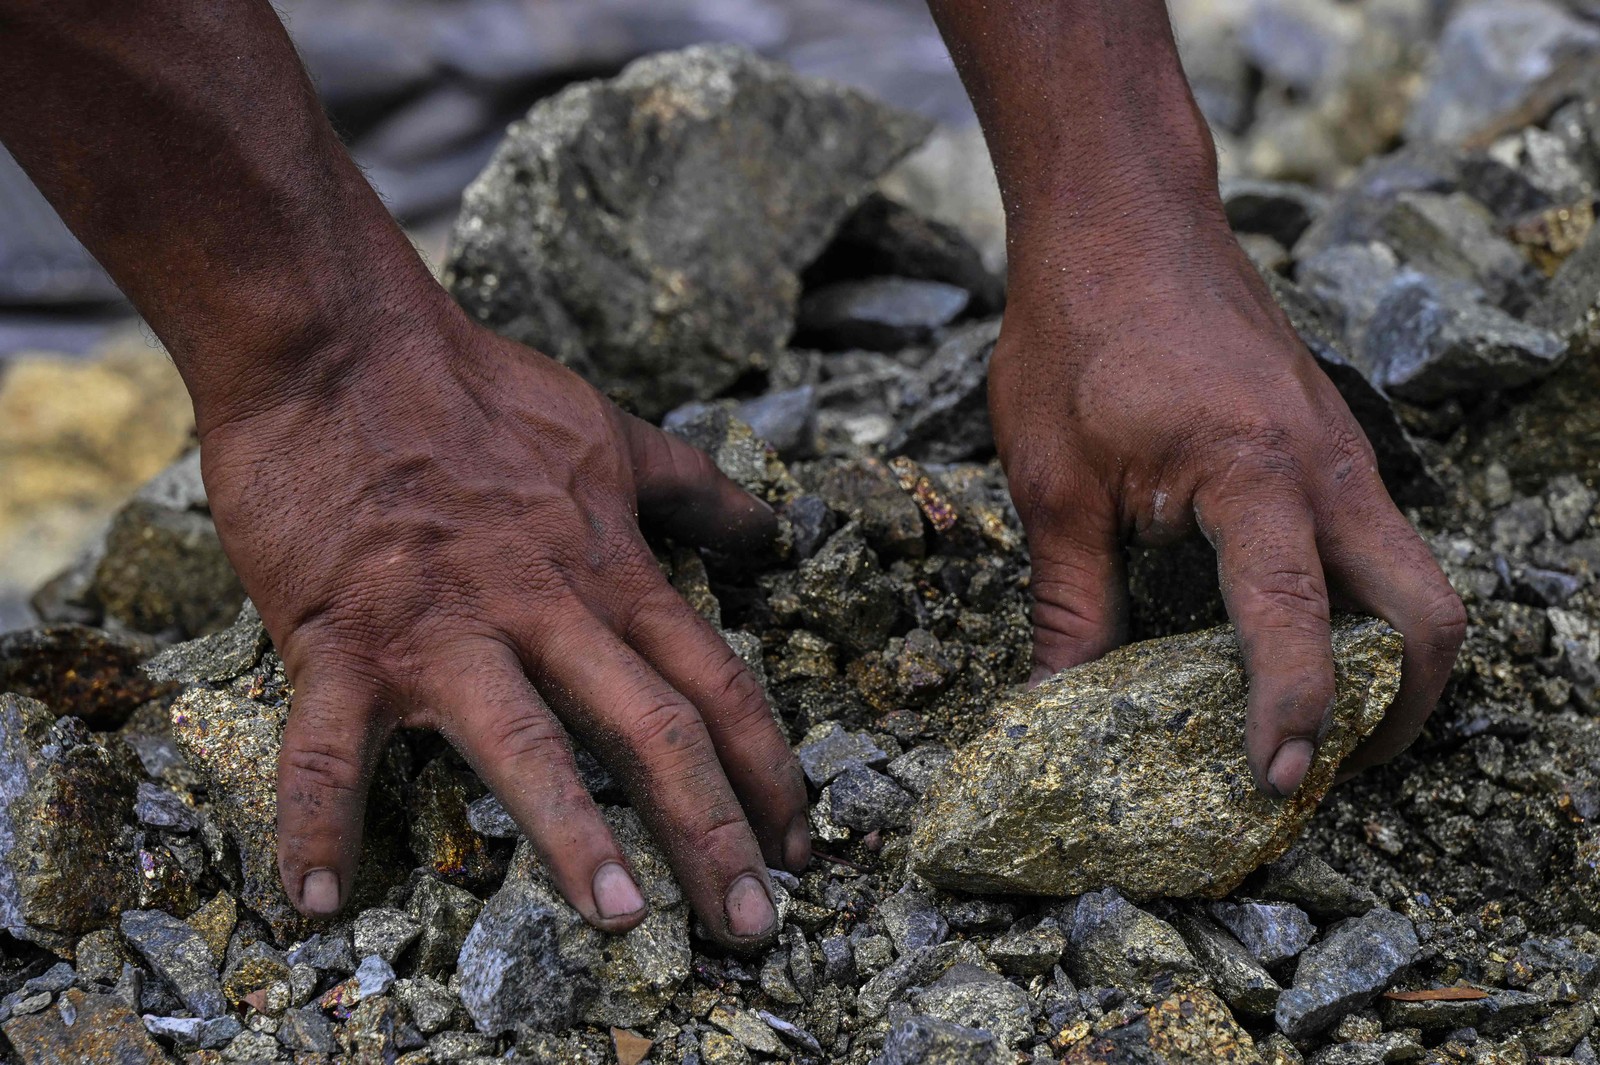 Minerador trabalha em mina de cobre ilegal, em Canaã dos Carajás. - Foto: Nelson Almeida / AFP